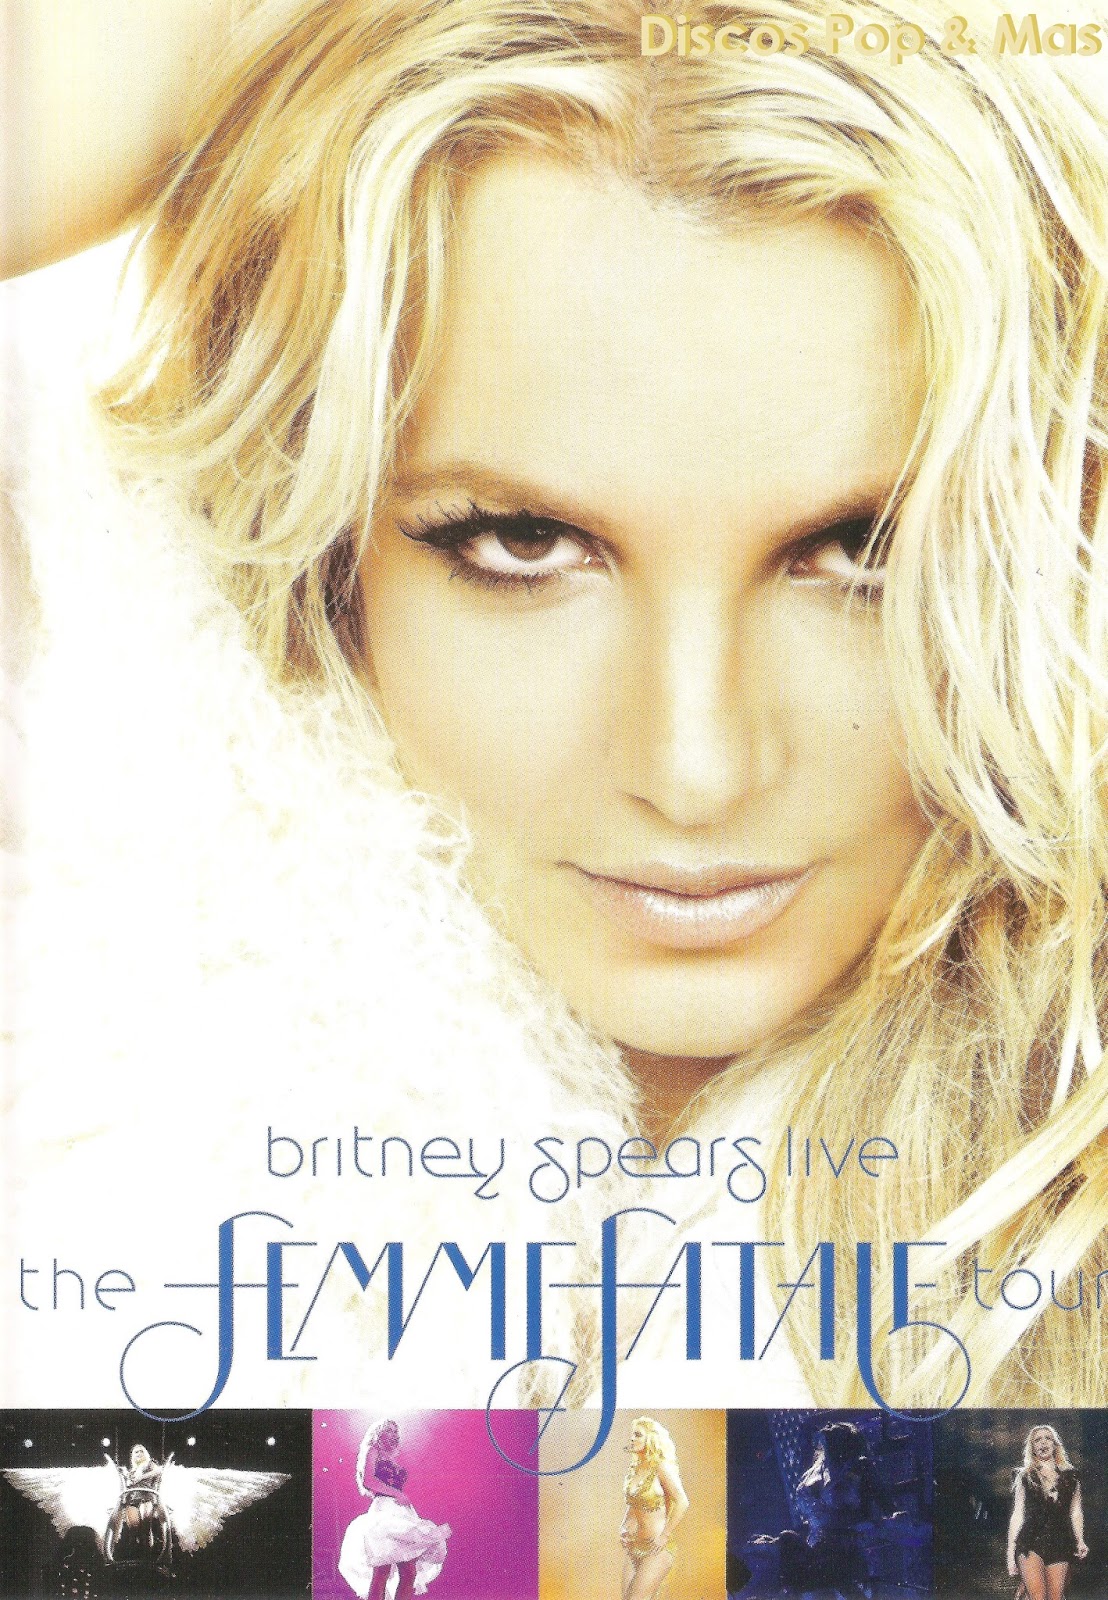 Discos Pop & Mas: Britney Spears - Live: The Femme Fatale Tour (DVD)